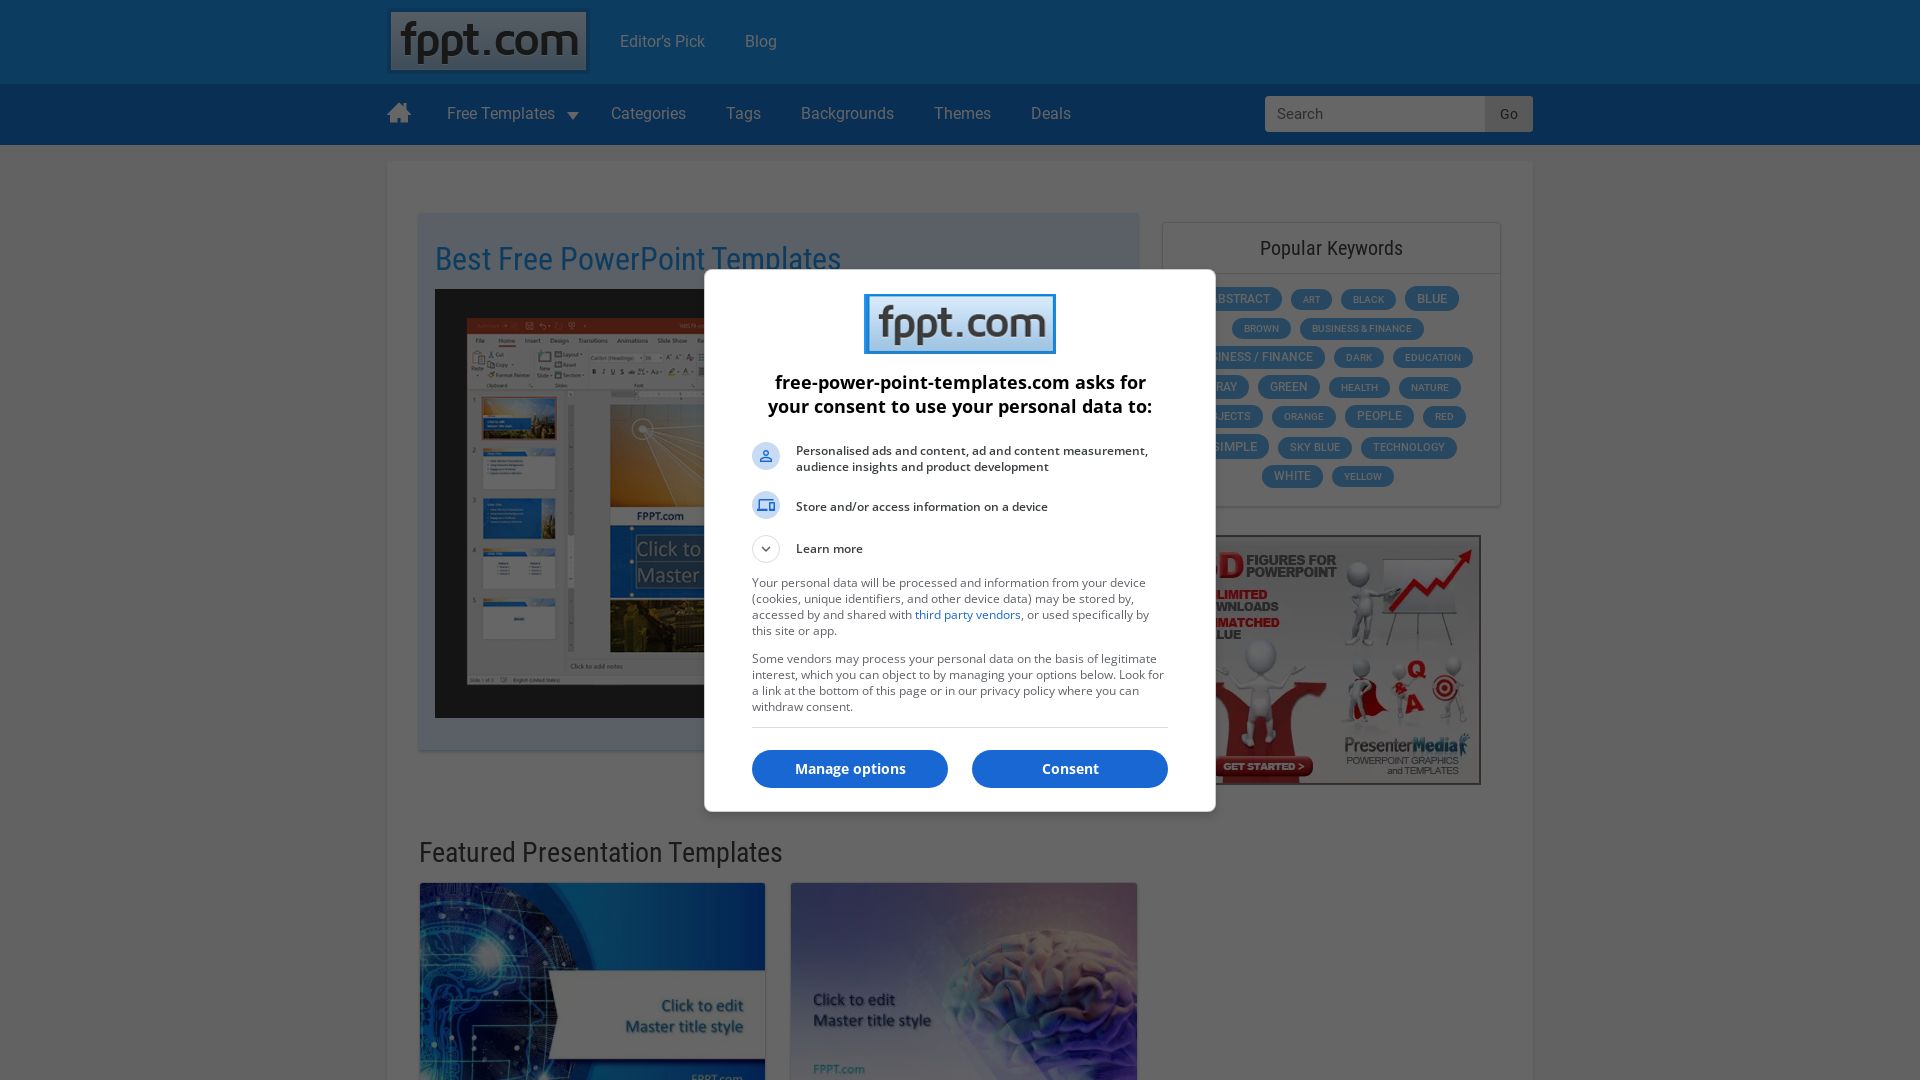 Estado web free-power-point-templates.com está   ONLINE